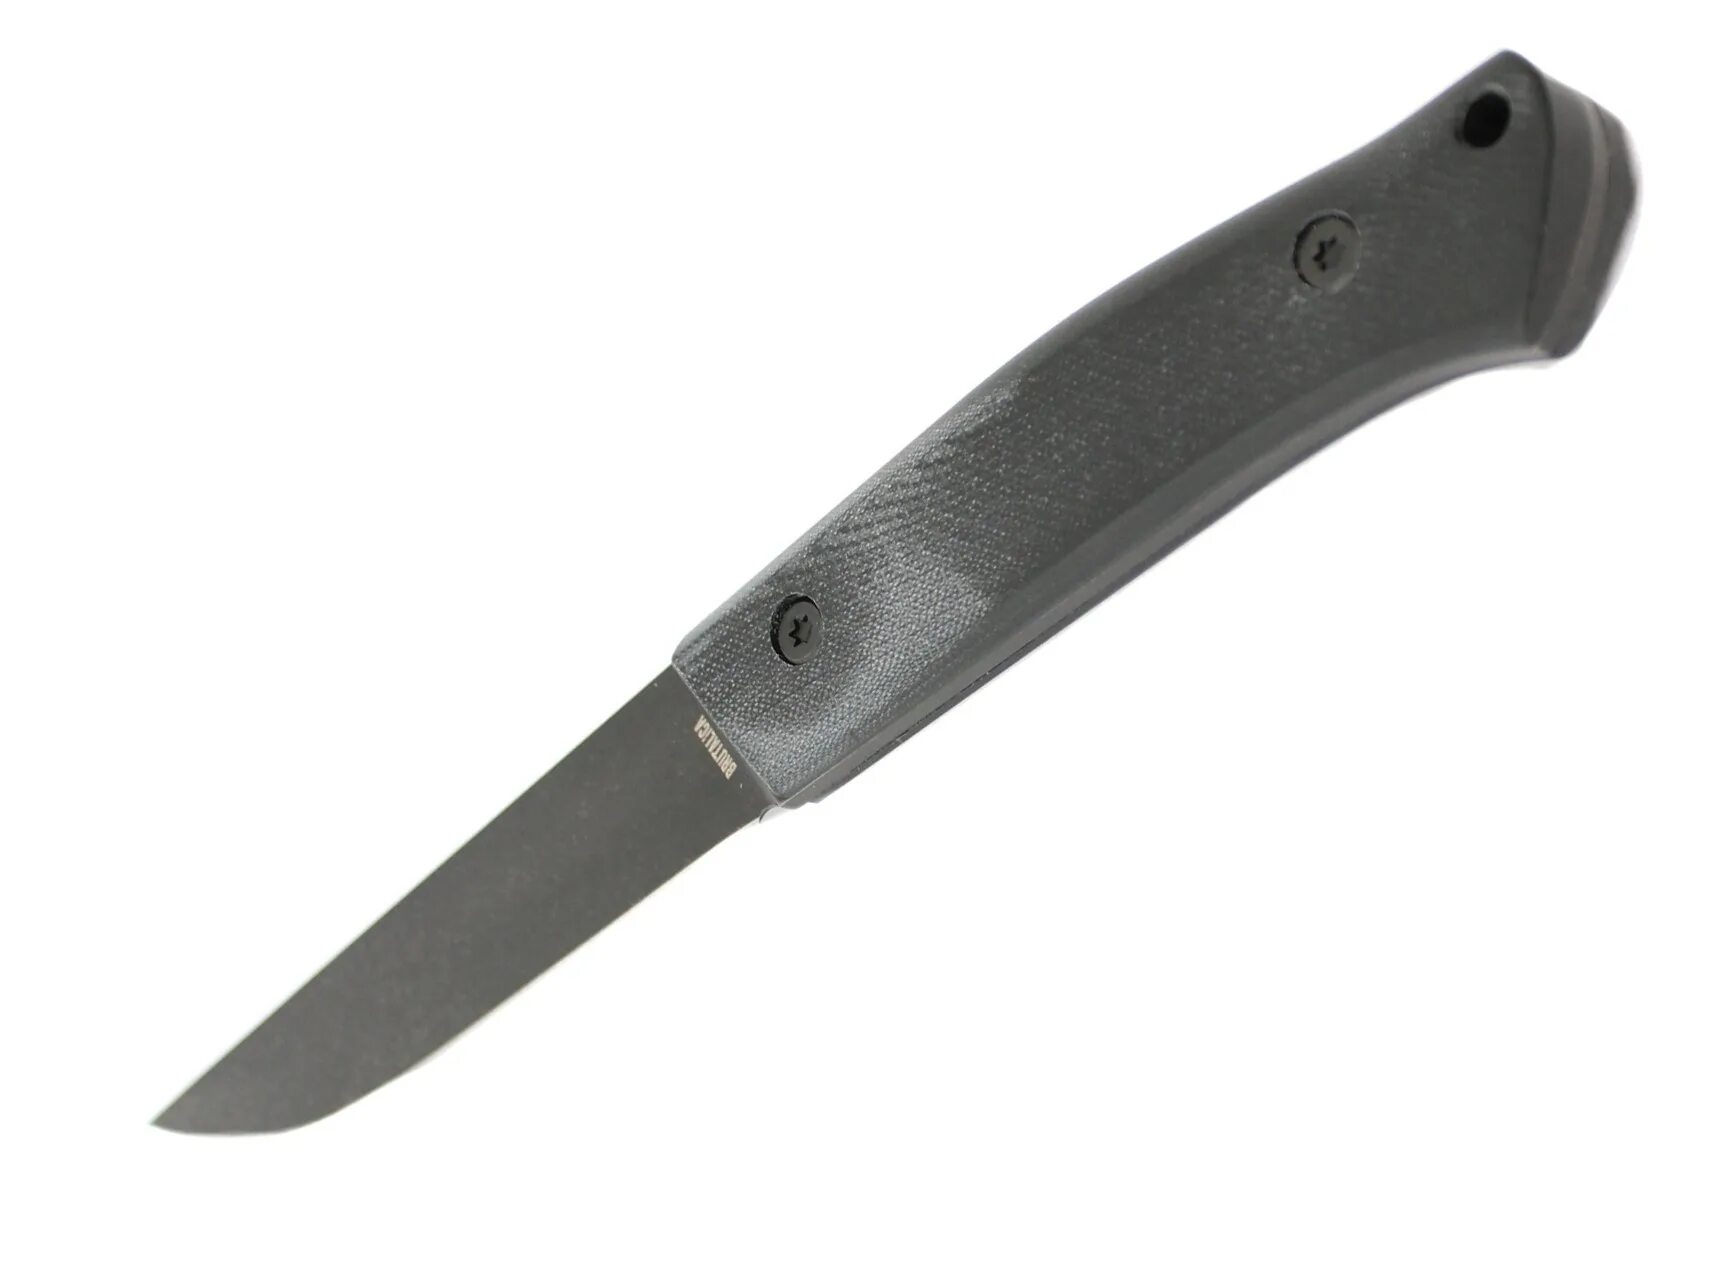 Купить нож бруталика. Нож праймер Бруталика. Нож "Bully" Black (brutalica). Belka brutalica складной нож.